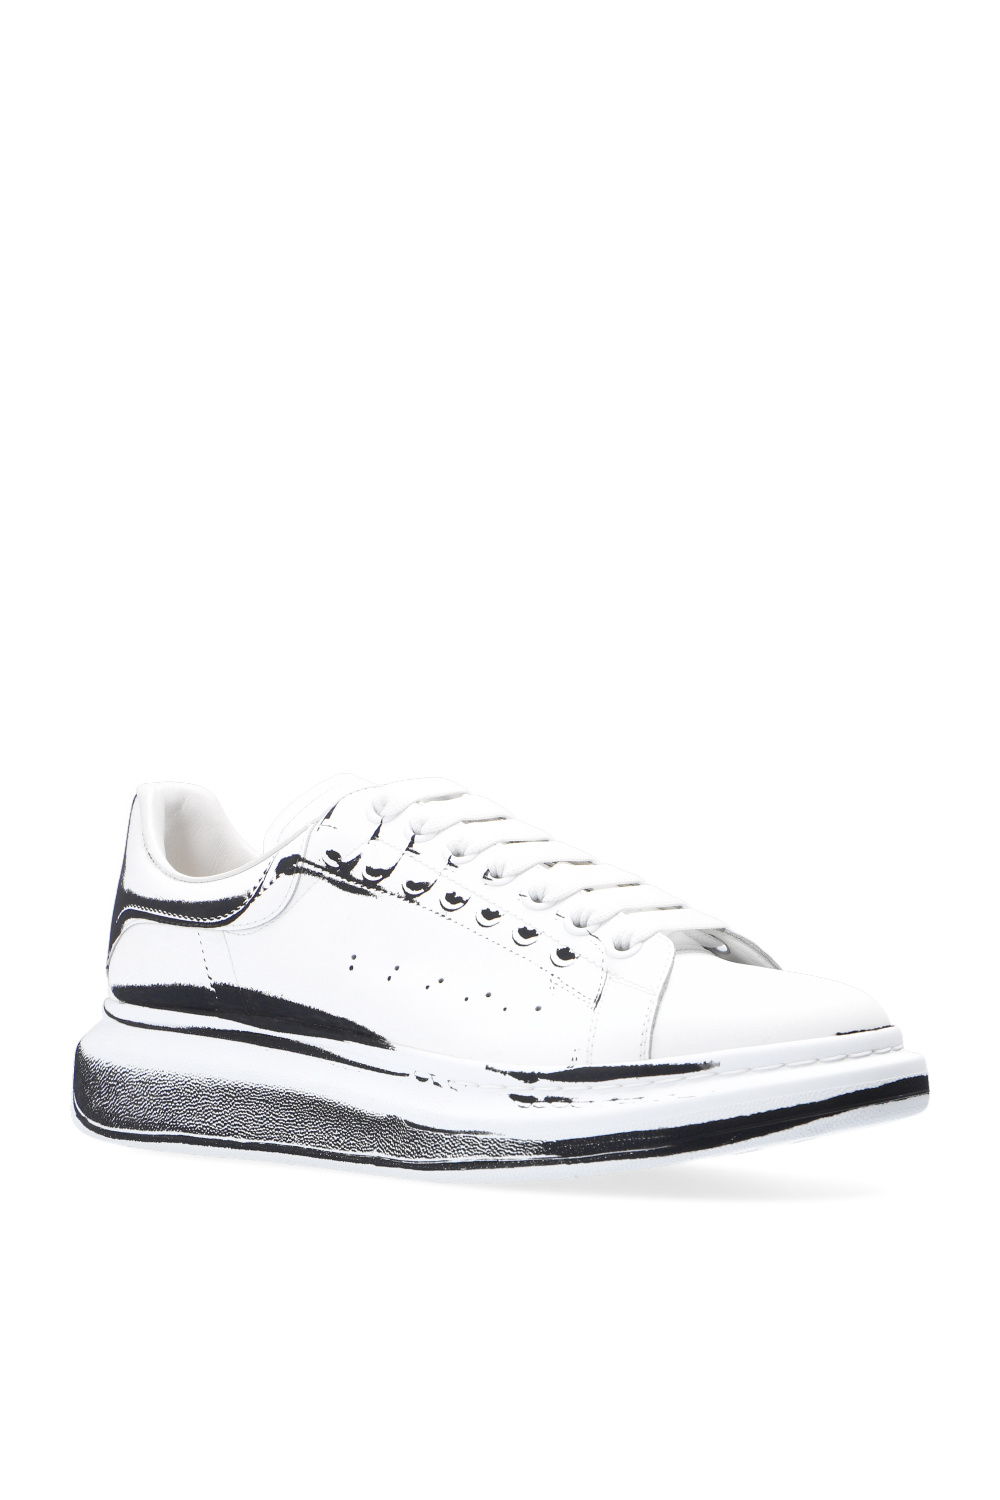 Alexander McQueen 'Larry' sneakers | Men's Shoes | Vitkac